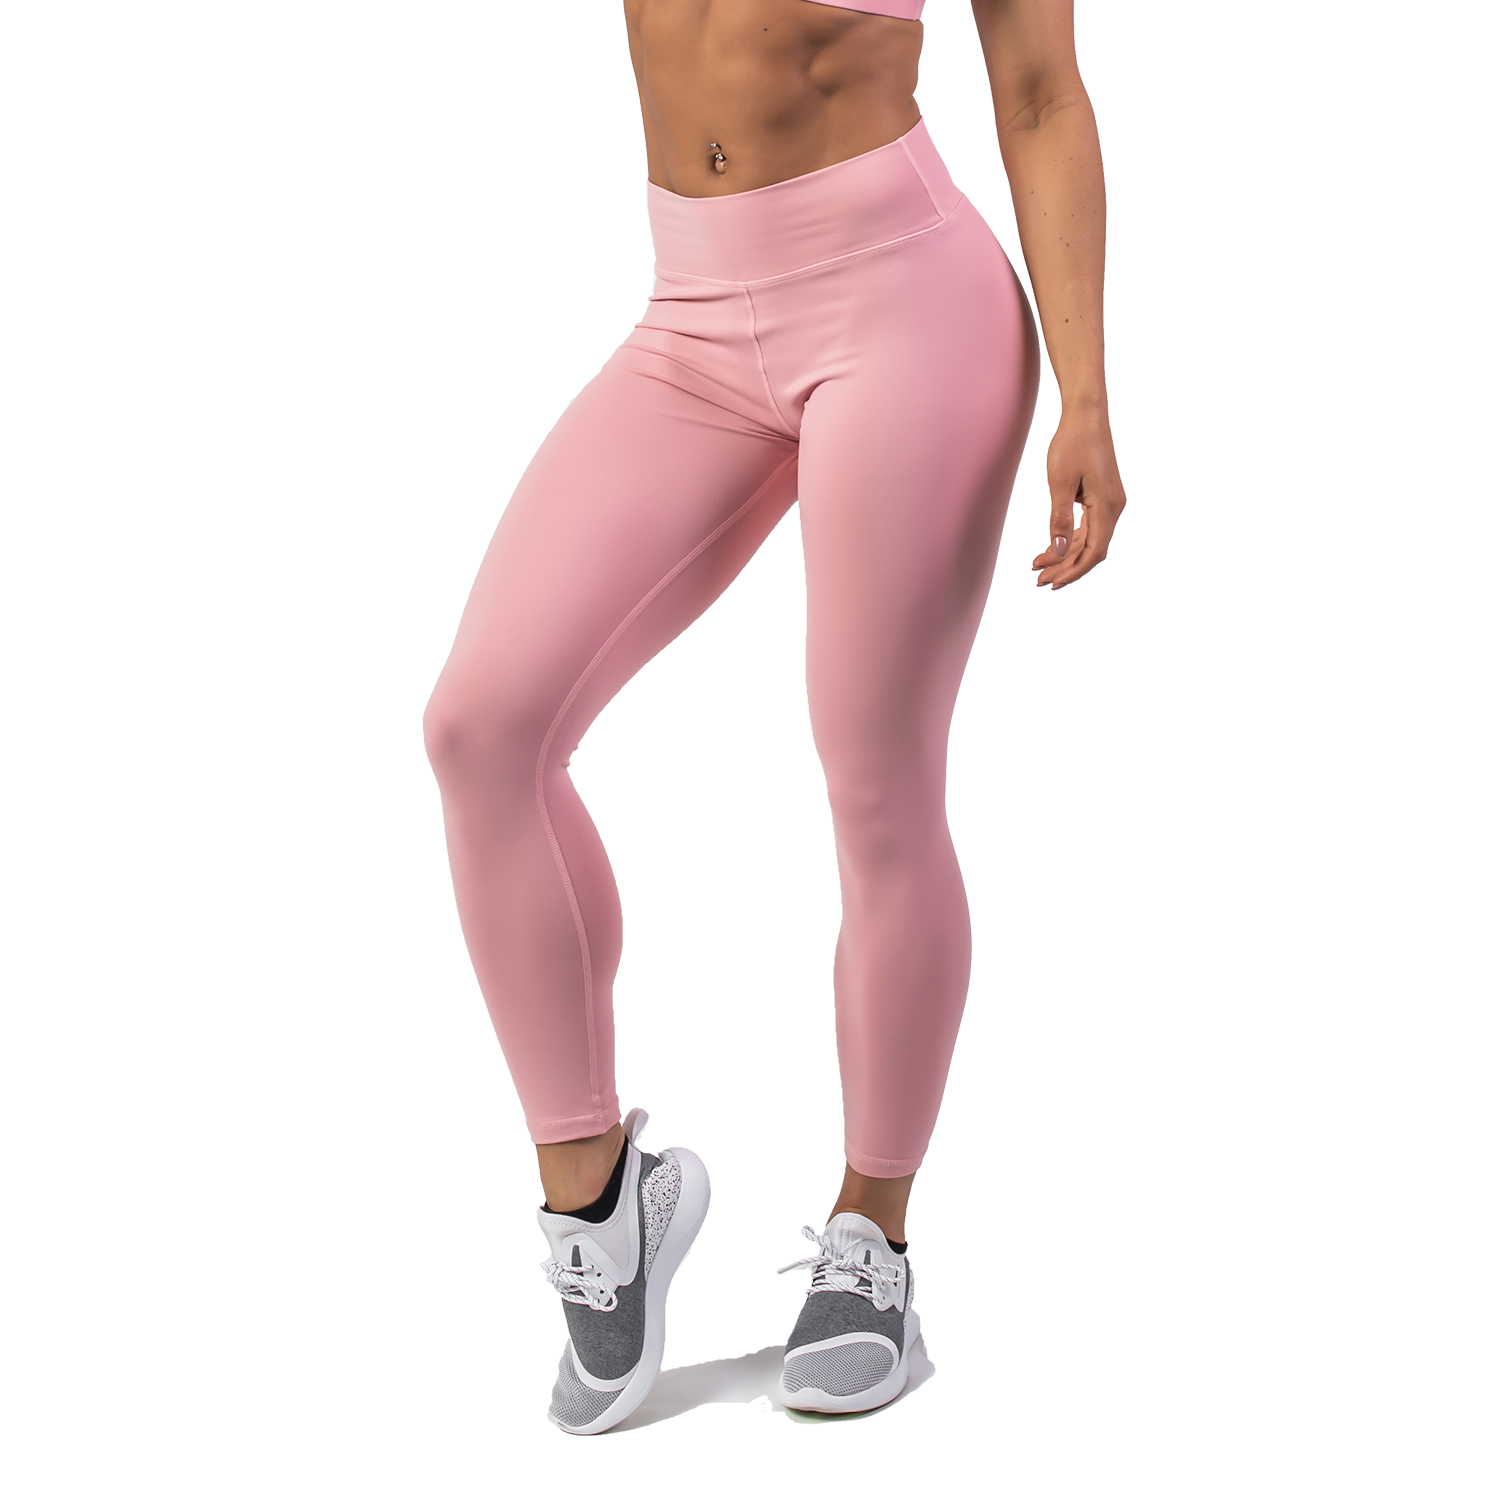 pink leggings gym